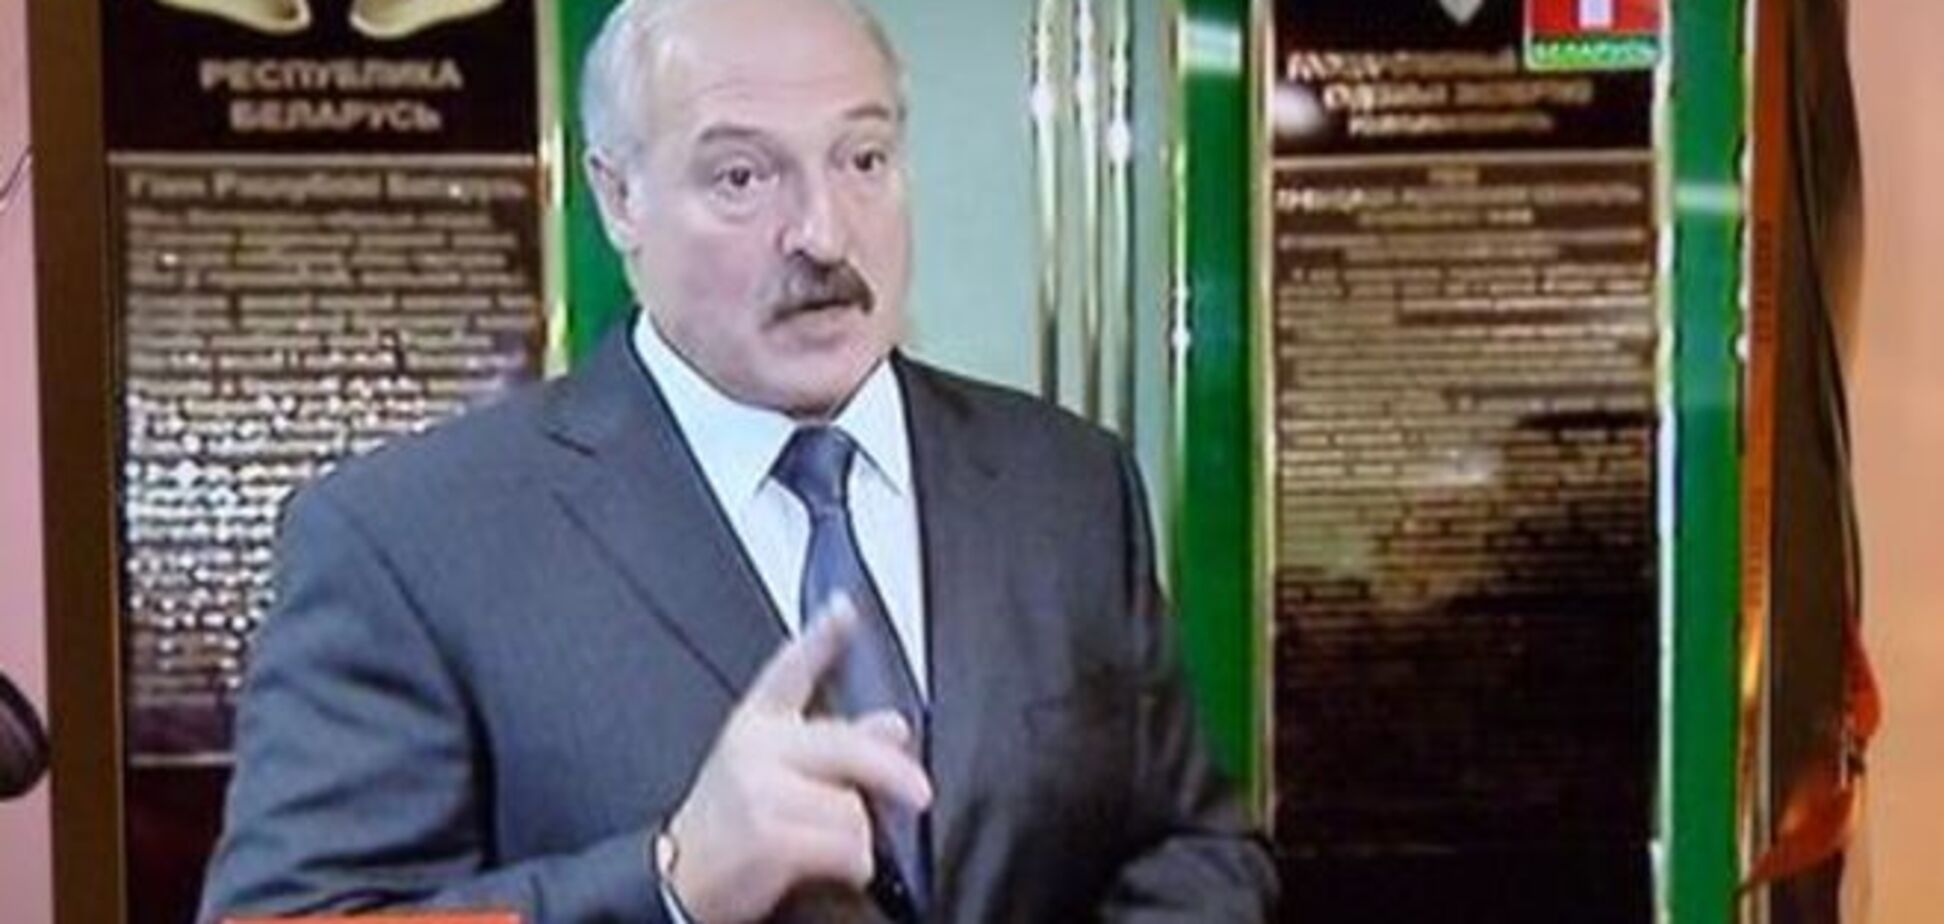 Комментарий: Послание Лукашенко неуклюже и оскорбительно